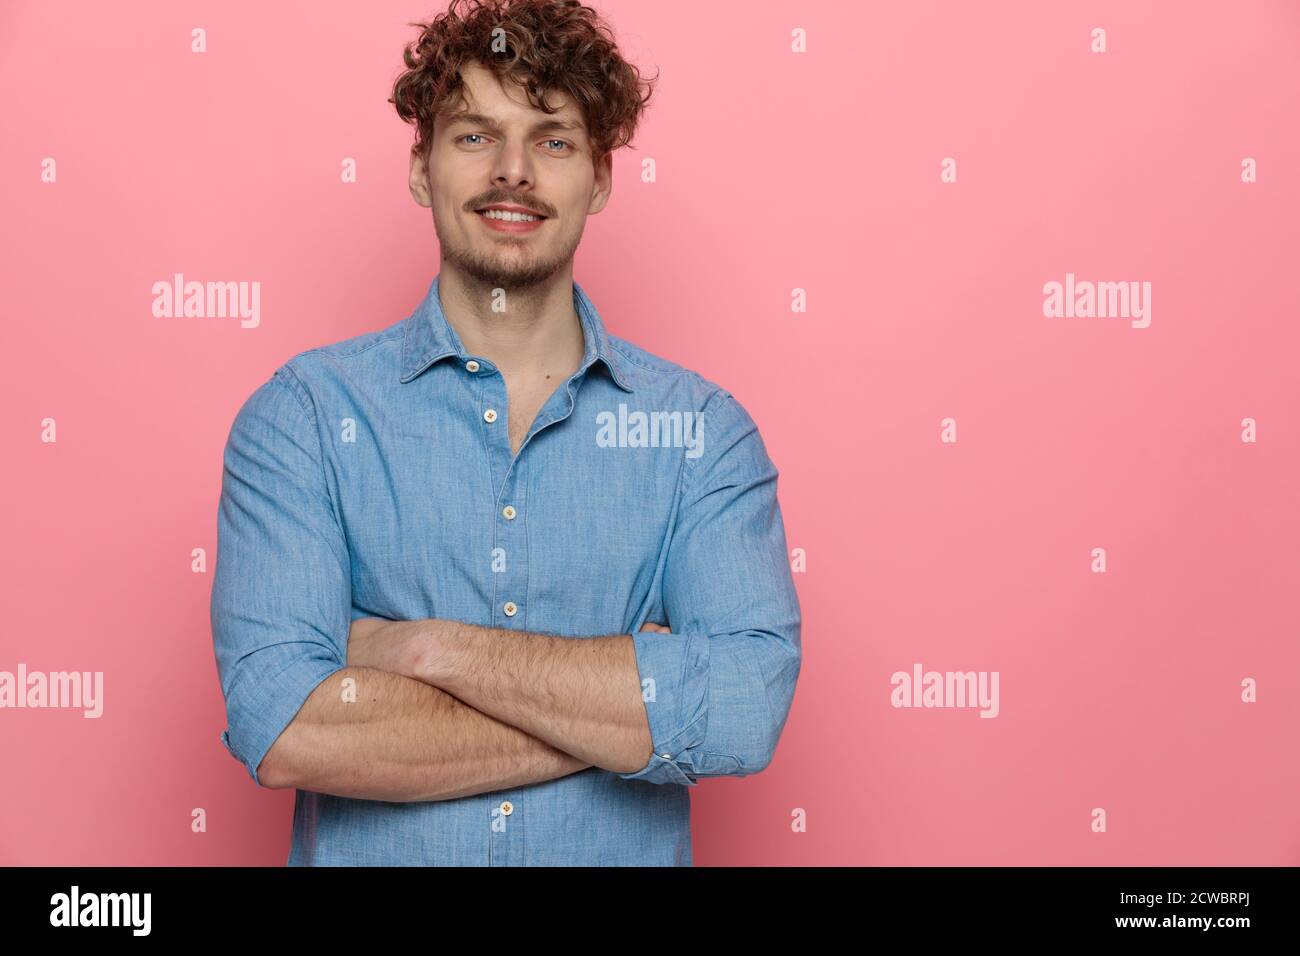 Glücklicher junger Kerl lächelnd und die Arme kreuzend, stehend auf rosafarbenem Hintergrund Stockfoto